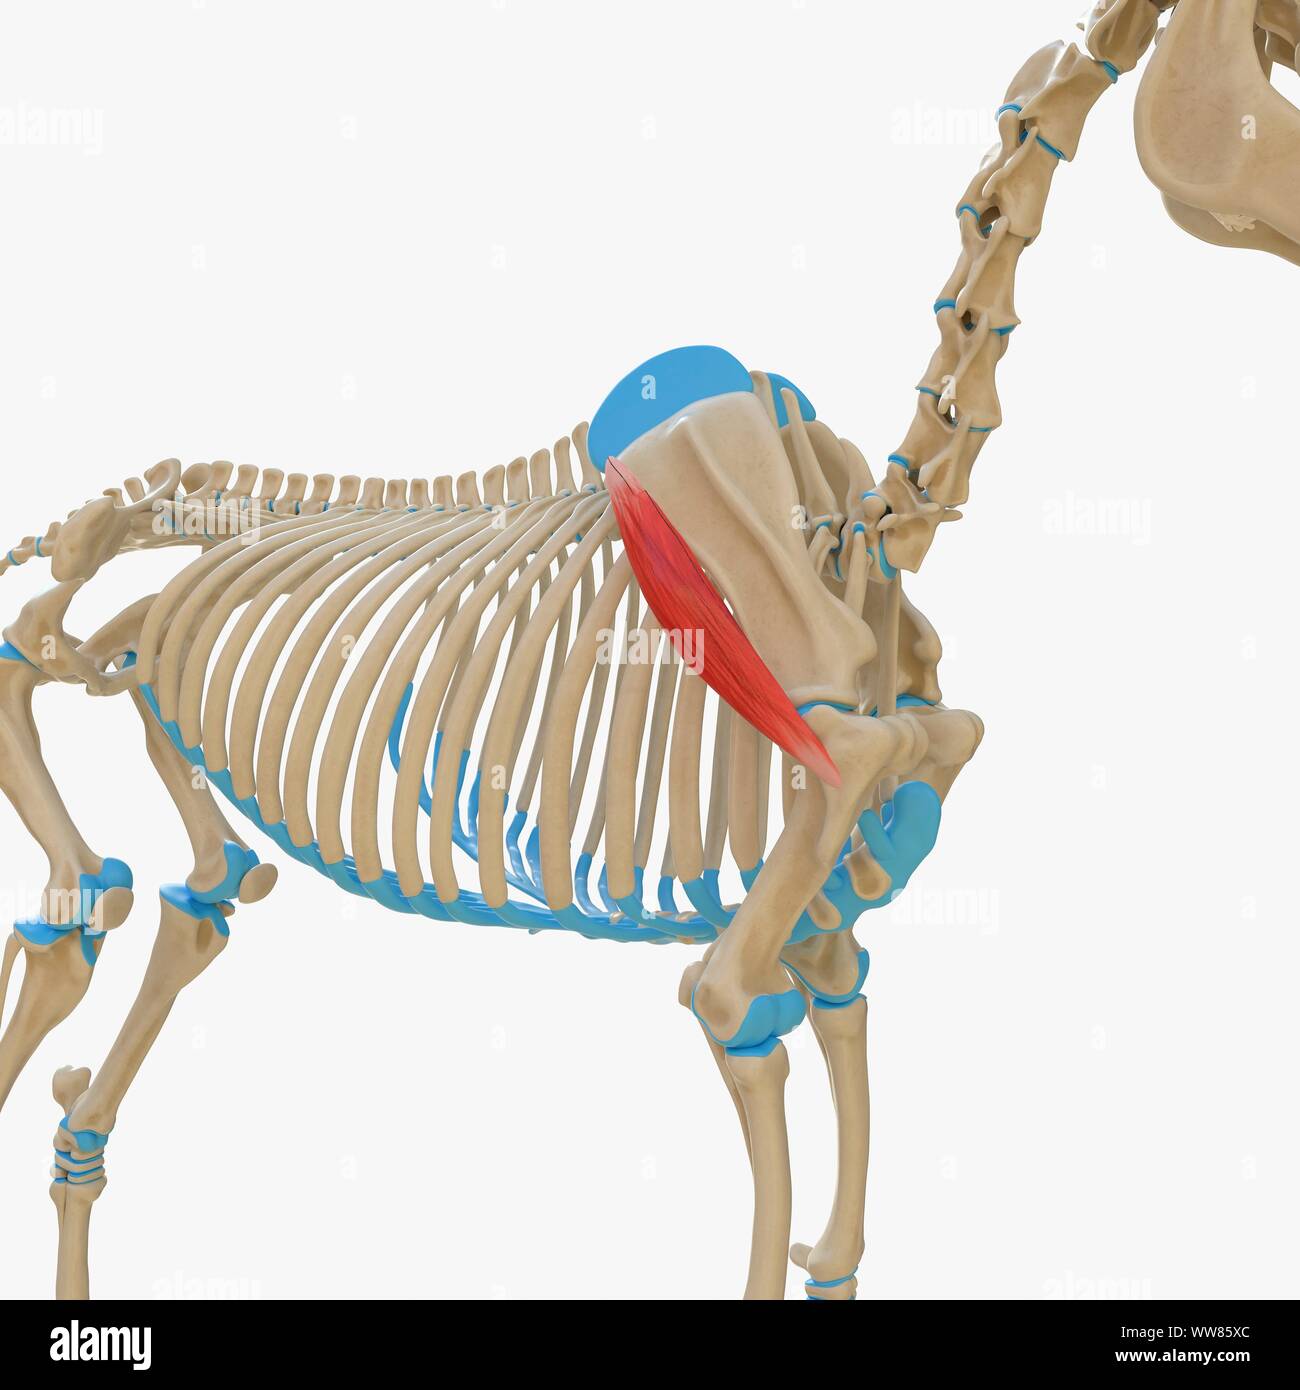 Horse deltoideus muscle, illustration Stock Photo